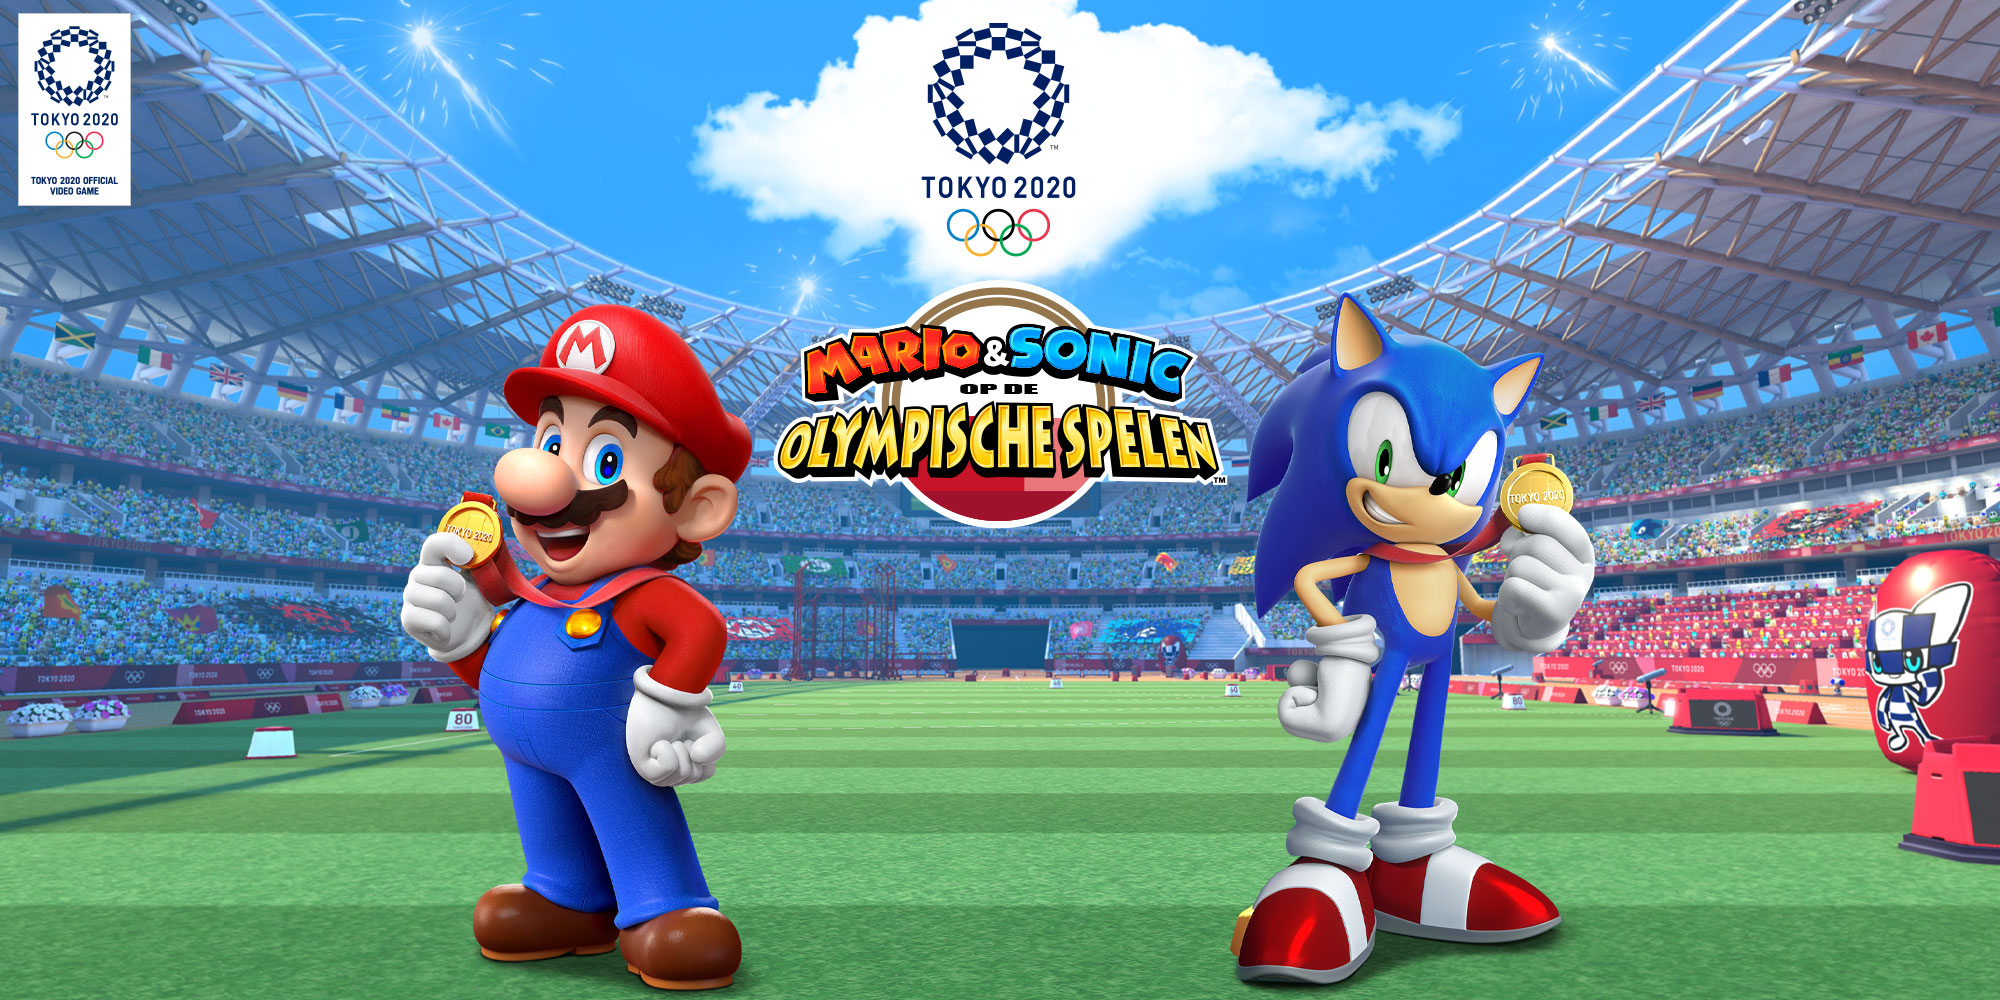 Mario & Sonic op de Olympische Spelen: Tokio 2020 | Nintendo | Games | Nintendo